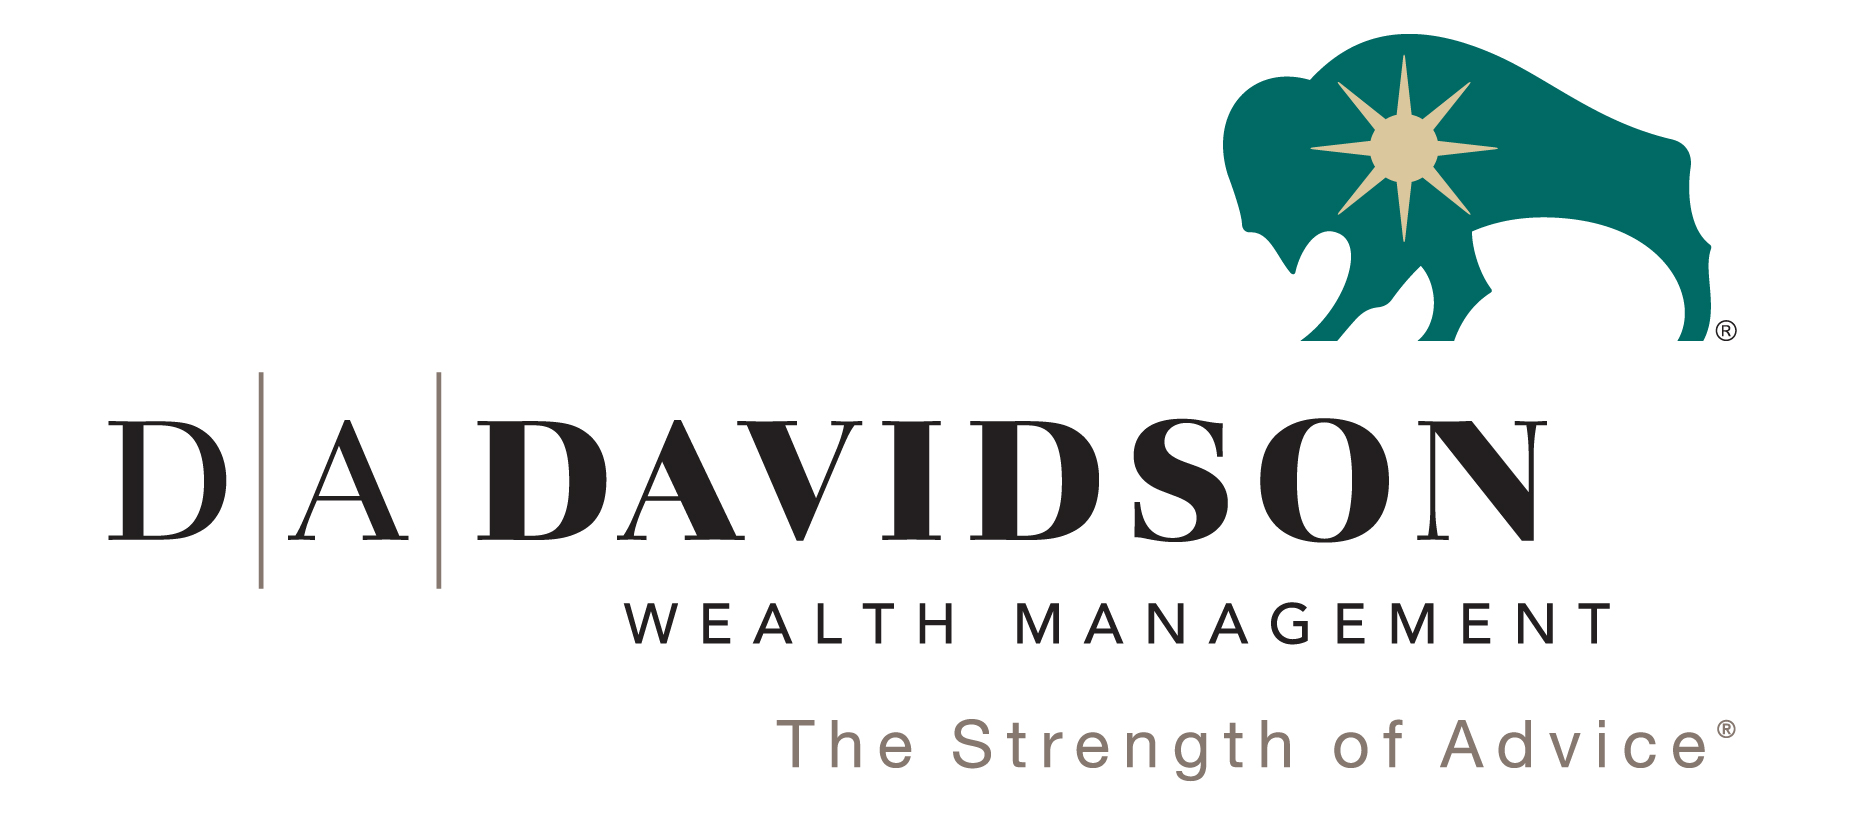 DA Davidson logo 2022